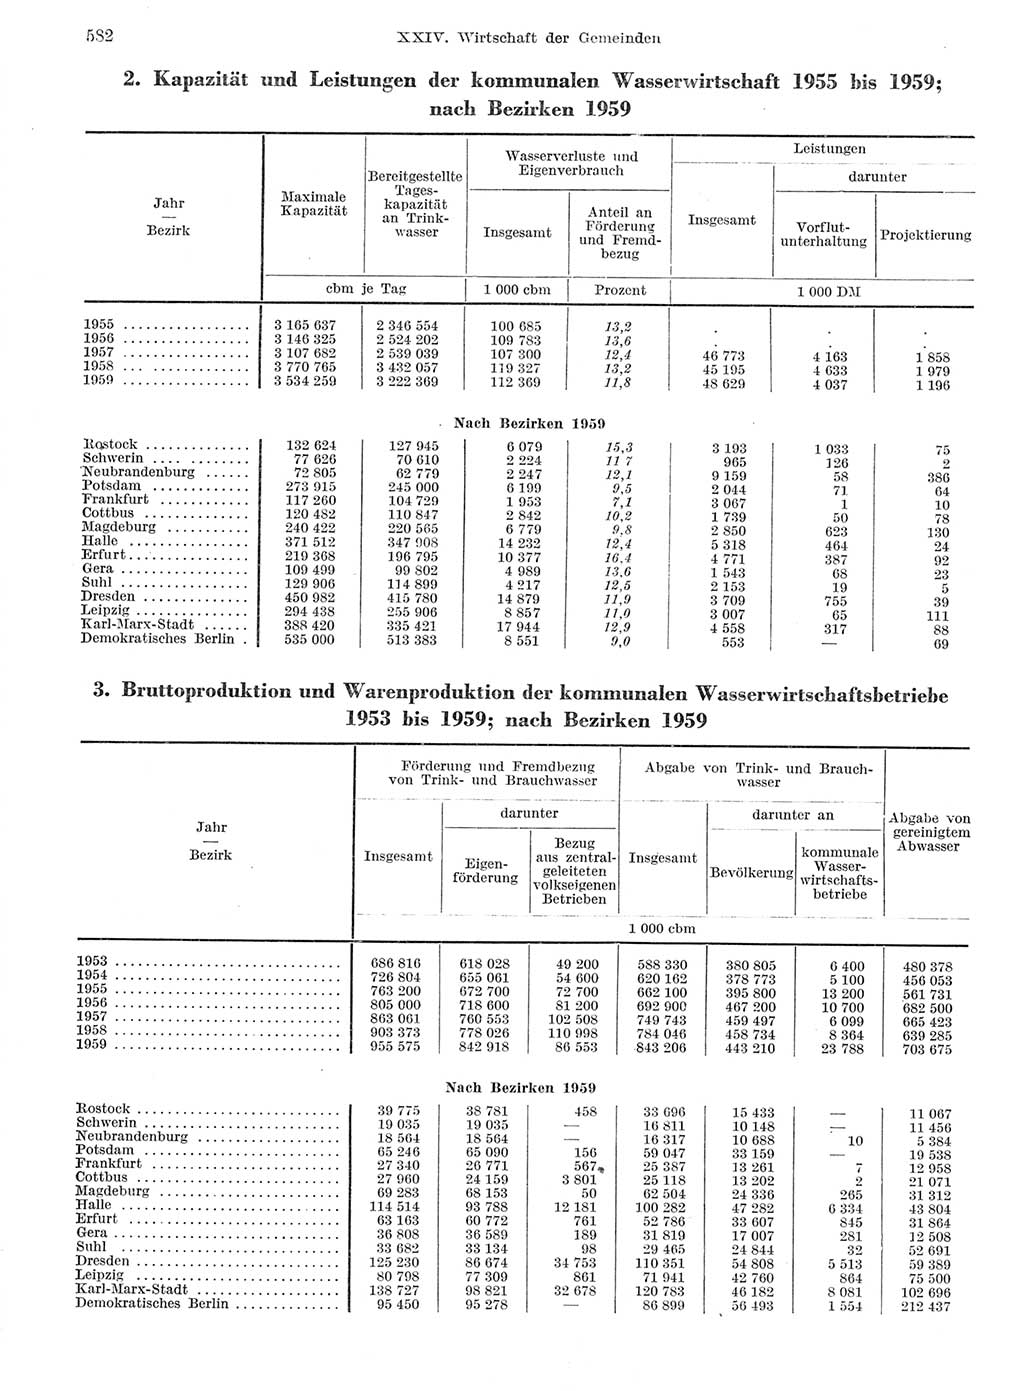 Statistisches Jahrbuch der Deutschen Demokratischen Republik (DDR) 1959, Seite 582 (Stat. Jb. DDR 1959, S. 582)